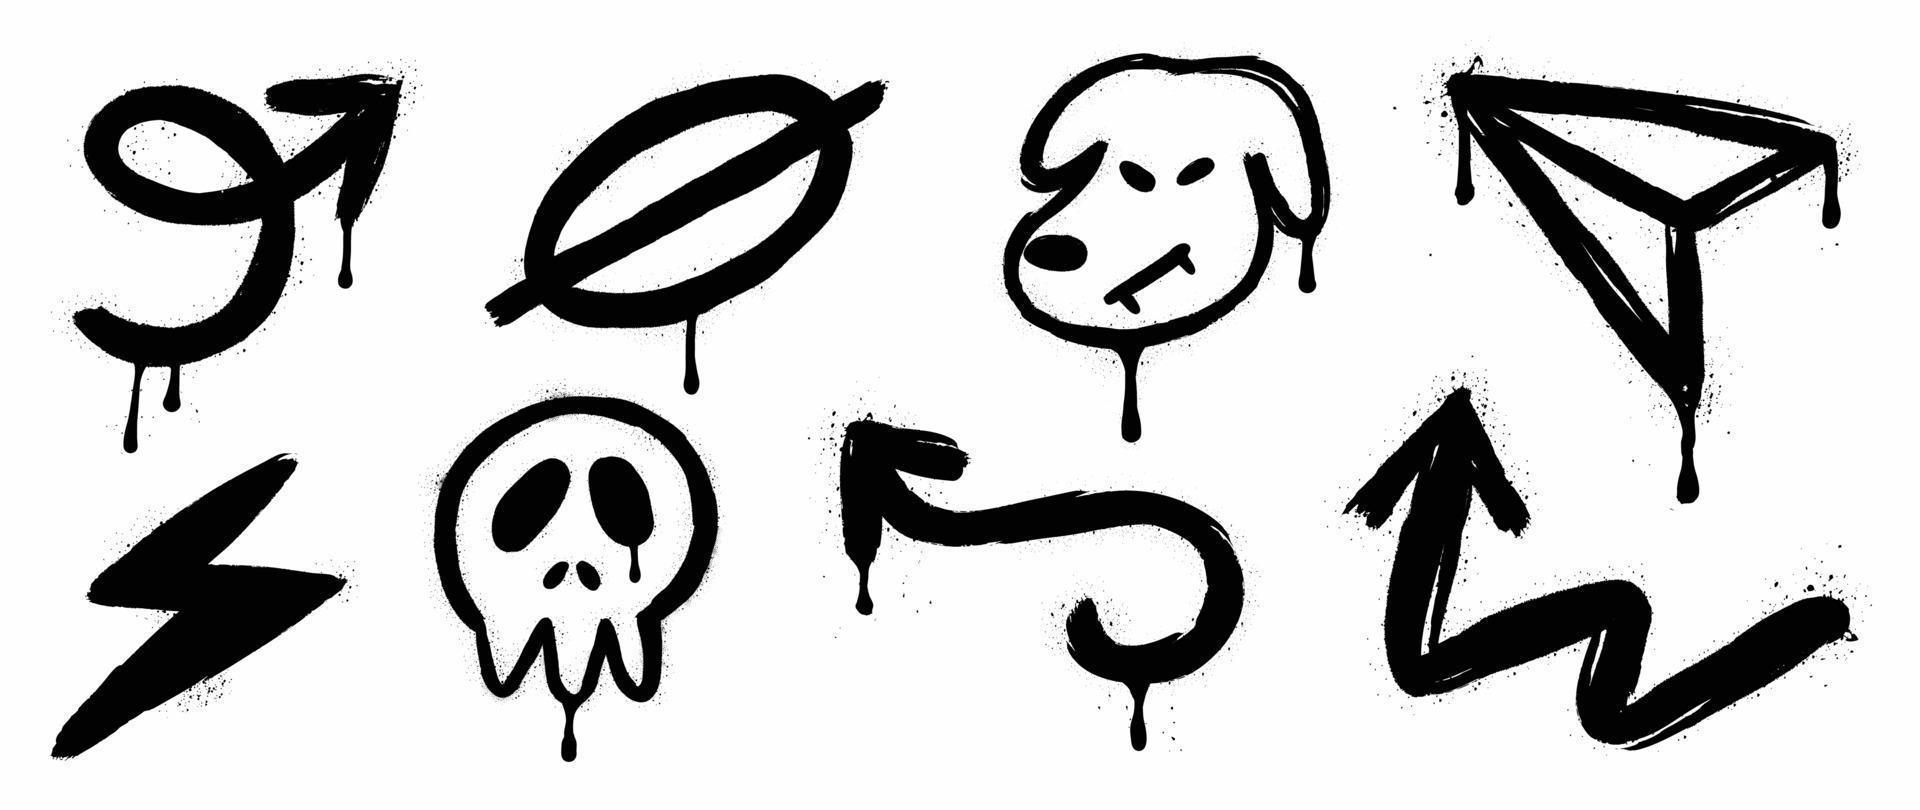 uppsättning av graffiti spray mönster vektor illustration. samling av spray textur pil, symbol, hund, skalle, blixt- bult, raket papper. element på vit bakgrund för baner, dekoration, gata konst.